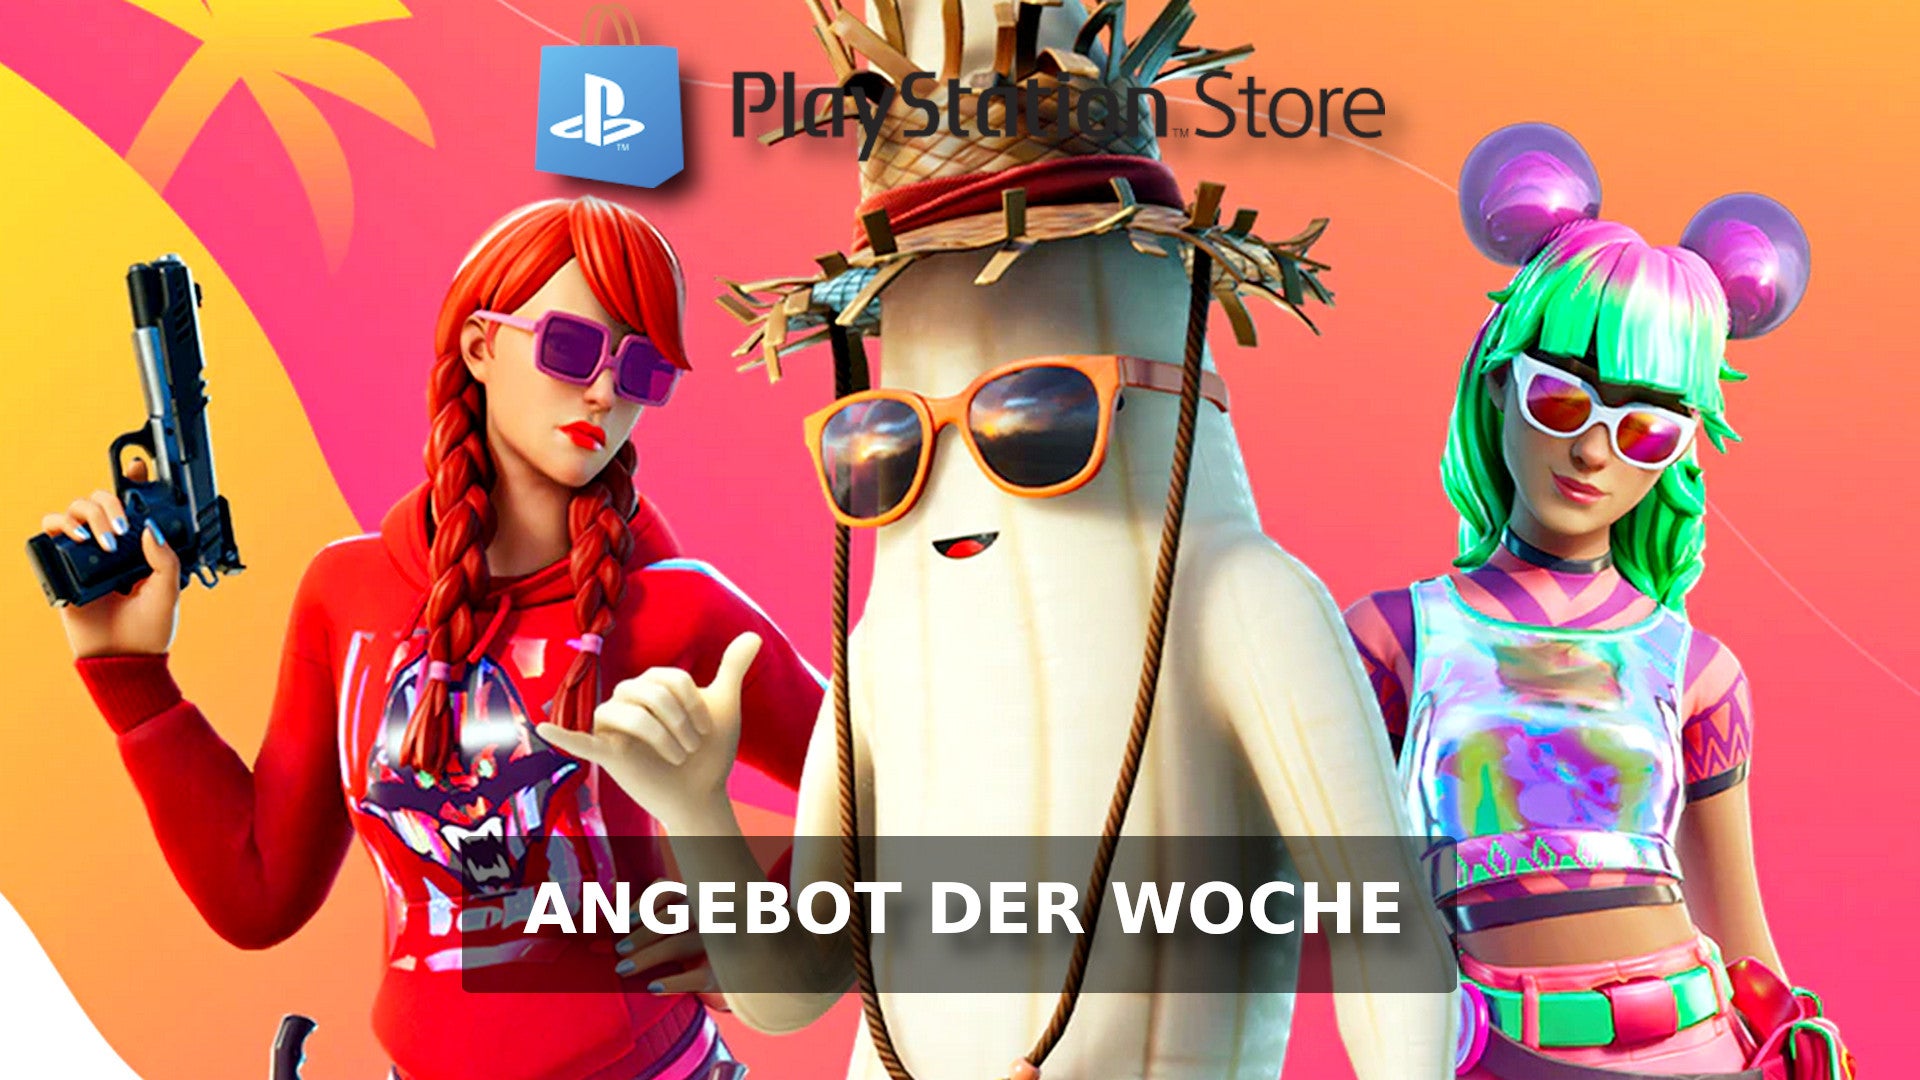 Bilder zu Fortnite: Holt euch 3 Pakete je 50 % günstiger im PlayStation Store - Nur noch kurze Zeit!